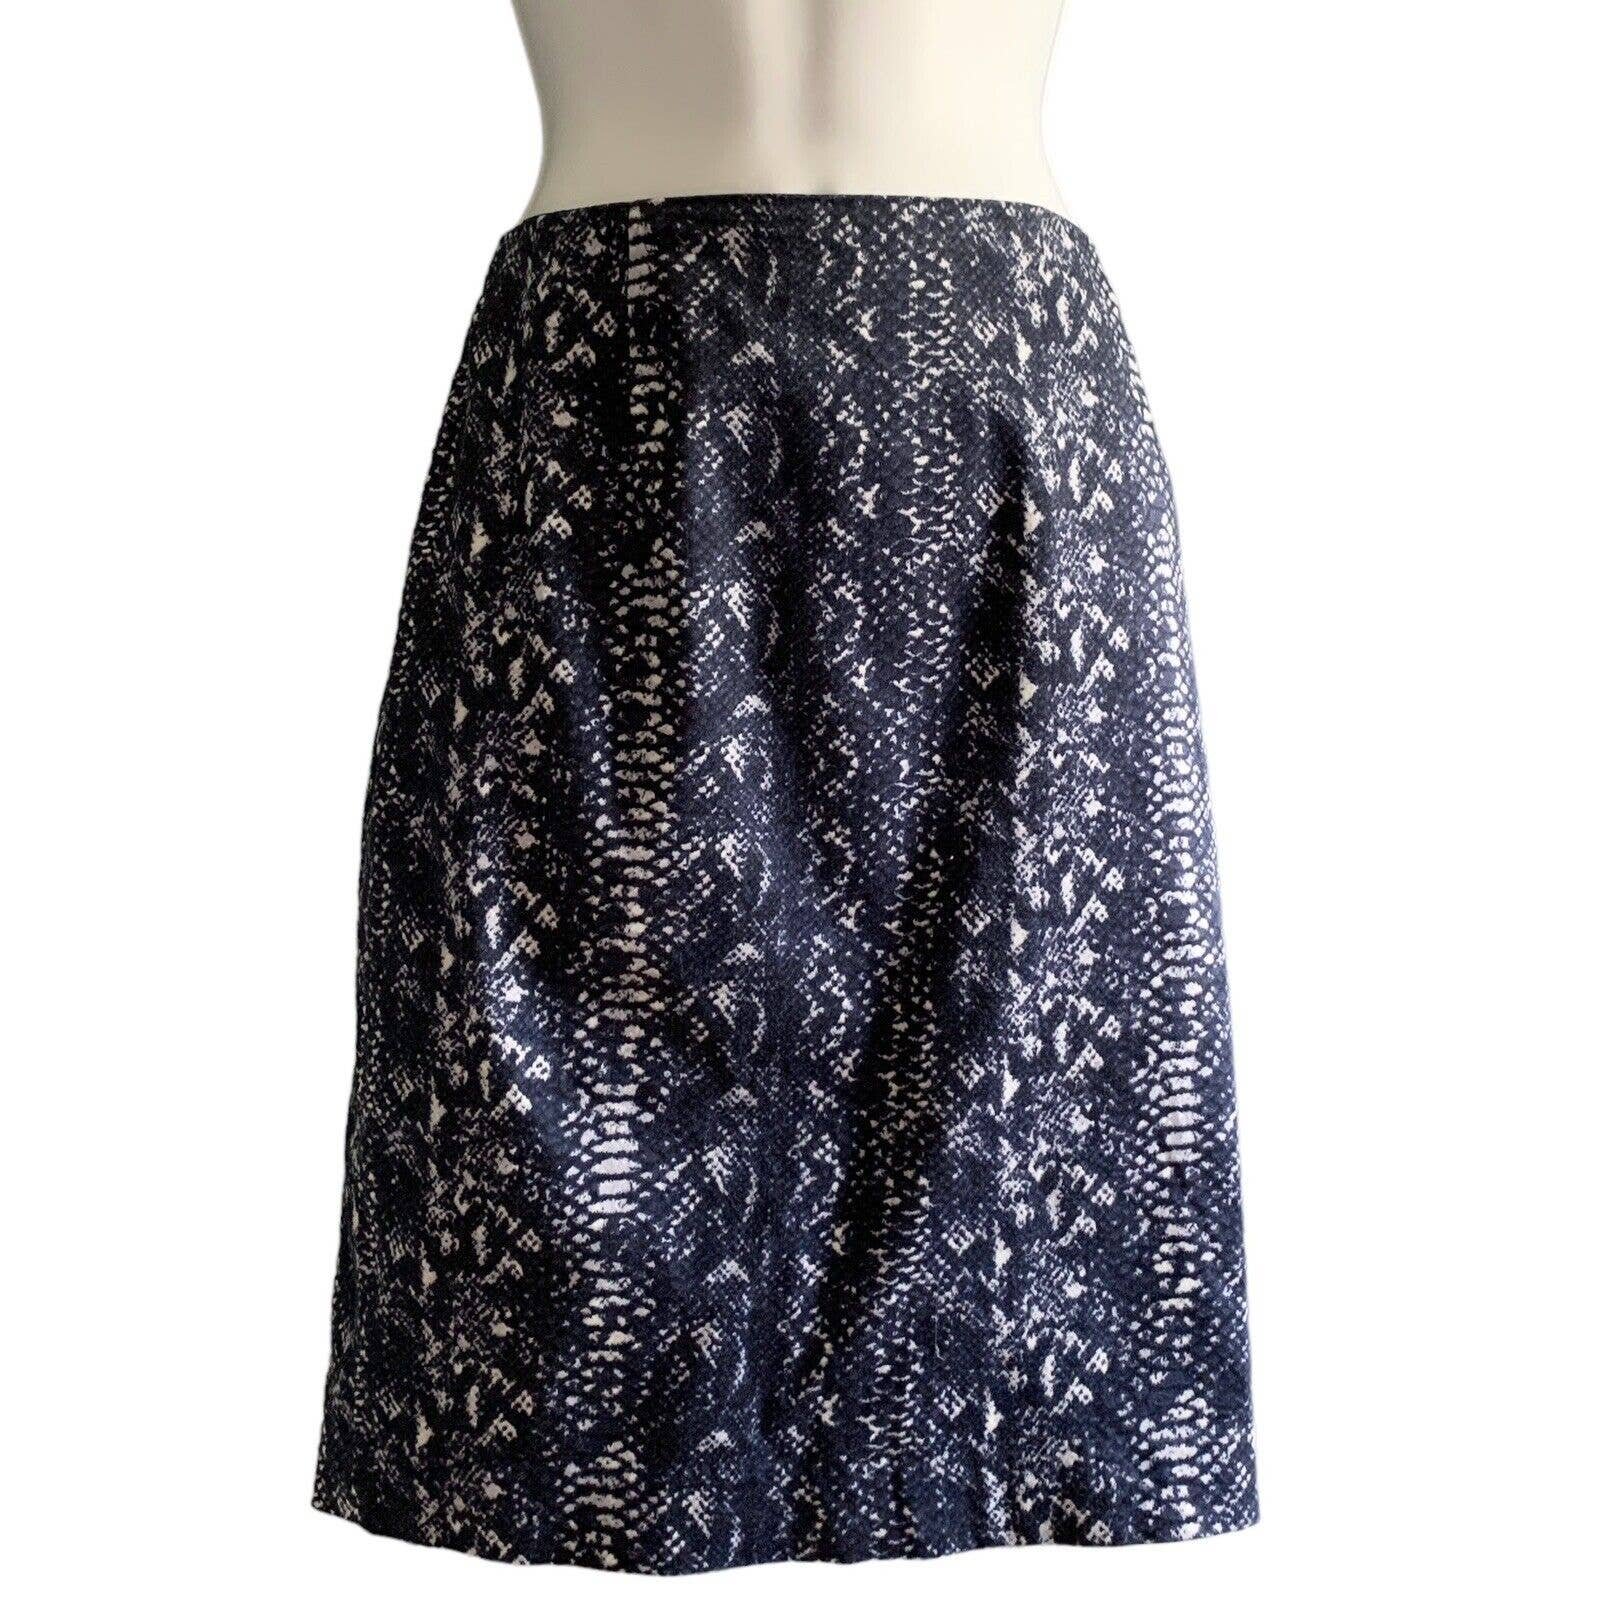 reasonable price Tahari Size 8 Pencil Skirt Cotton Roya